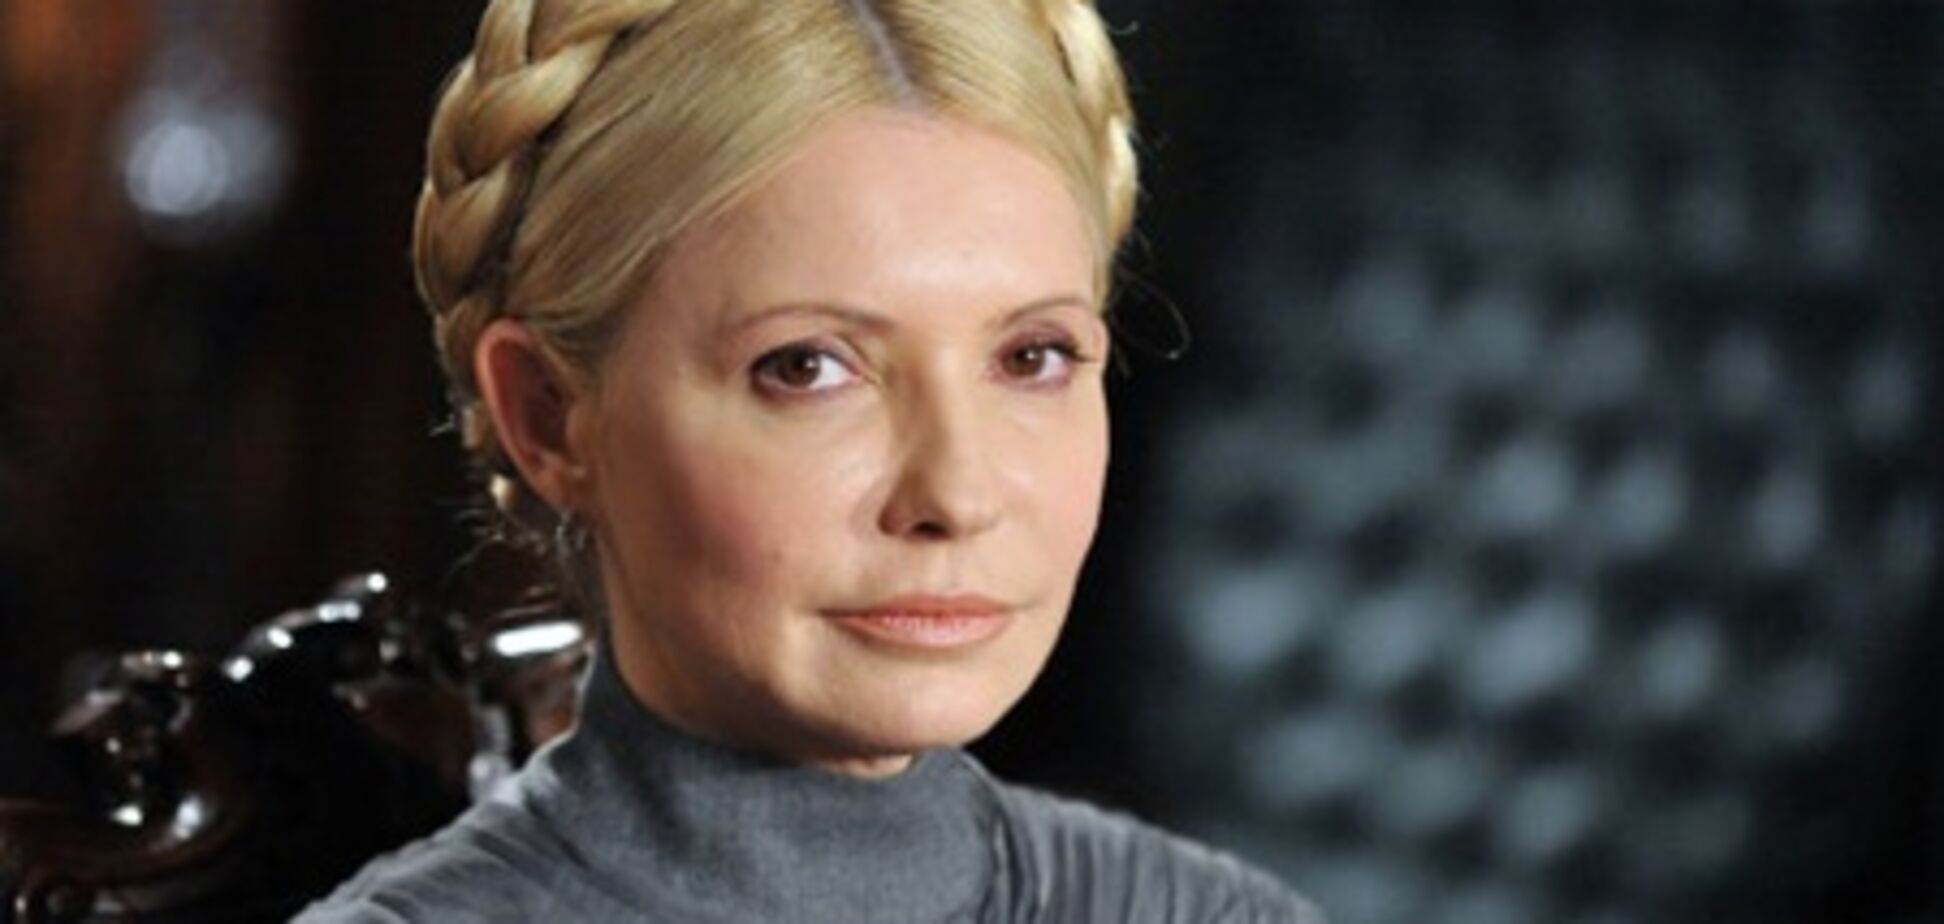 ДПтС: Тимошенко вимагає доставити її до суду на ношах, тому що 'так треба'